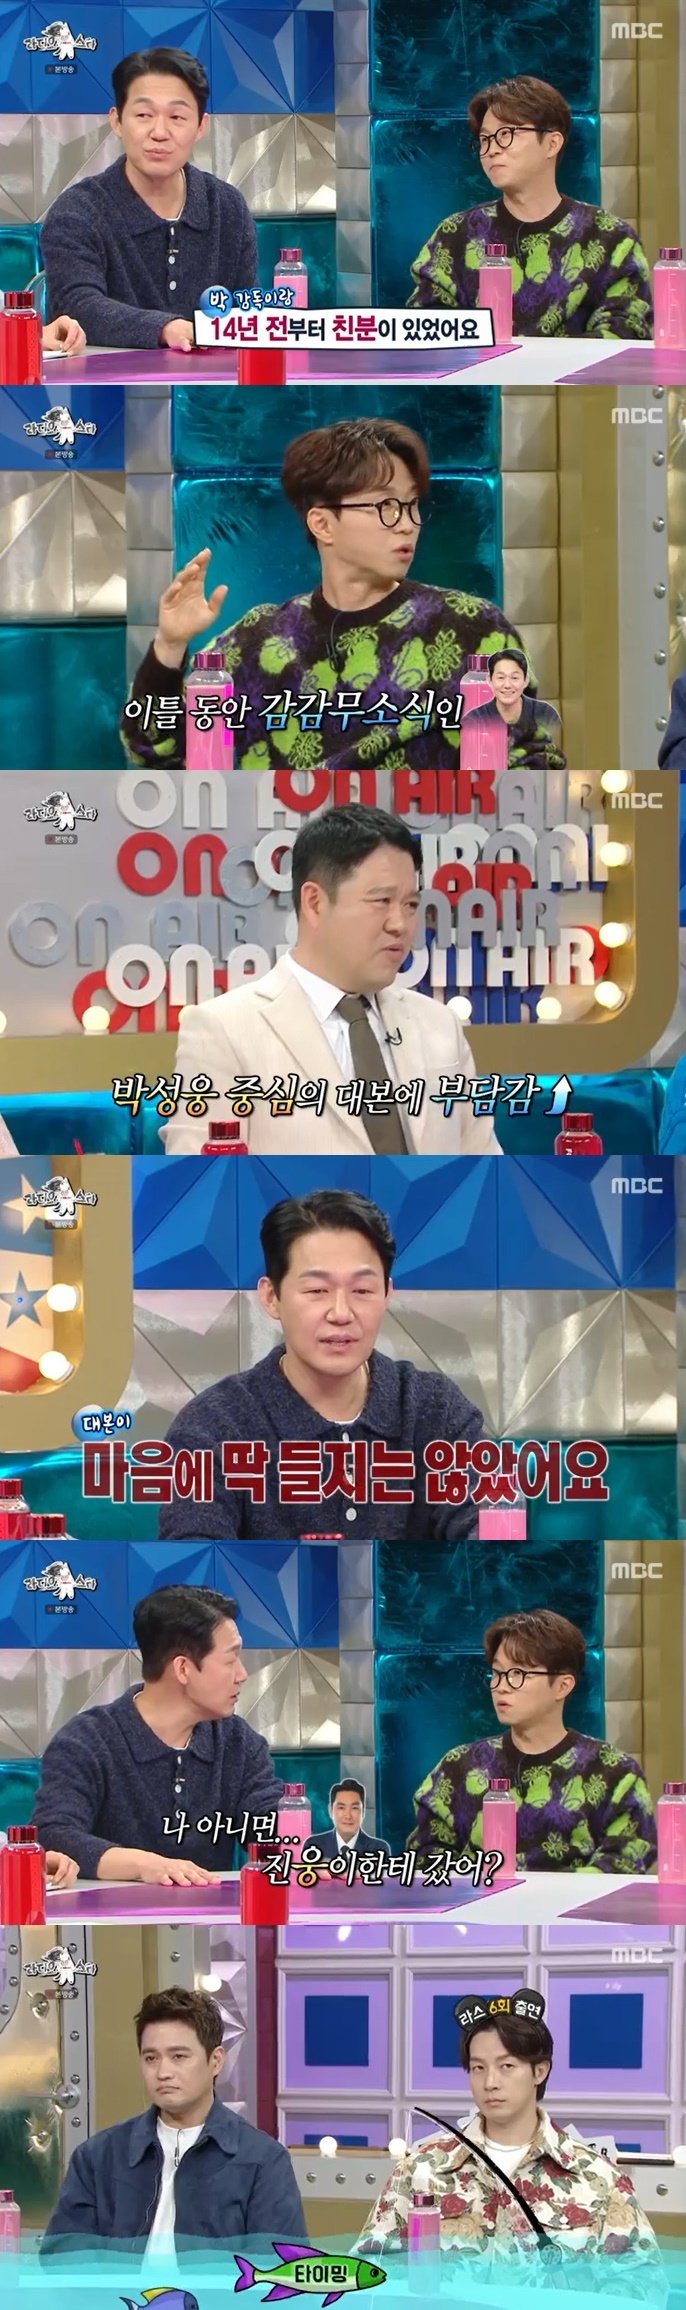 박성웅, 14년 전 '웅남이' 캐스팅?…박성광 영화 출연한 이유 [RE:TV]